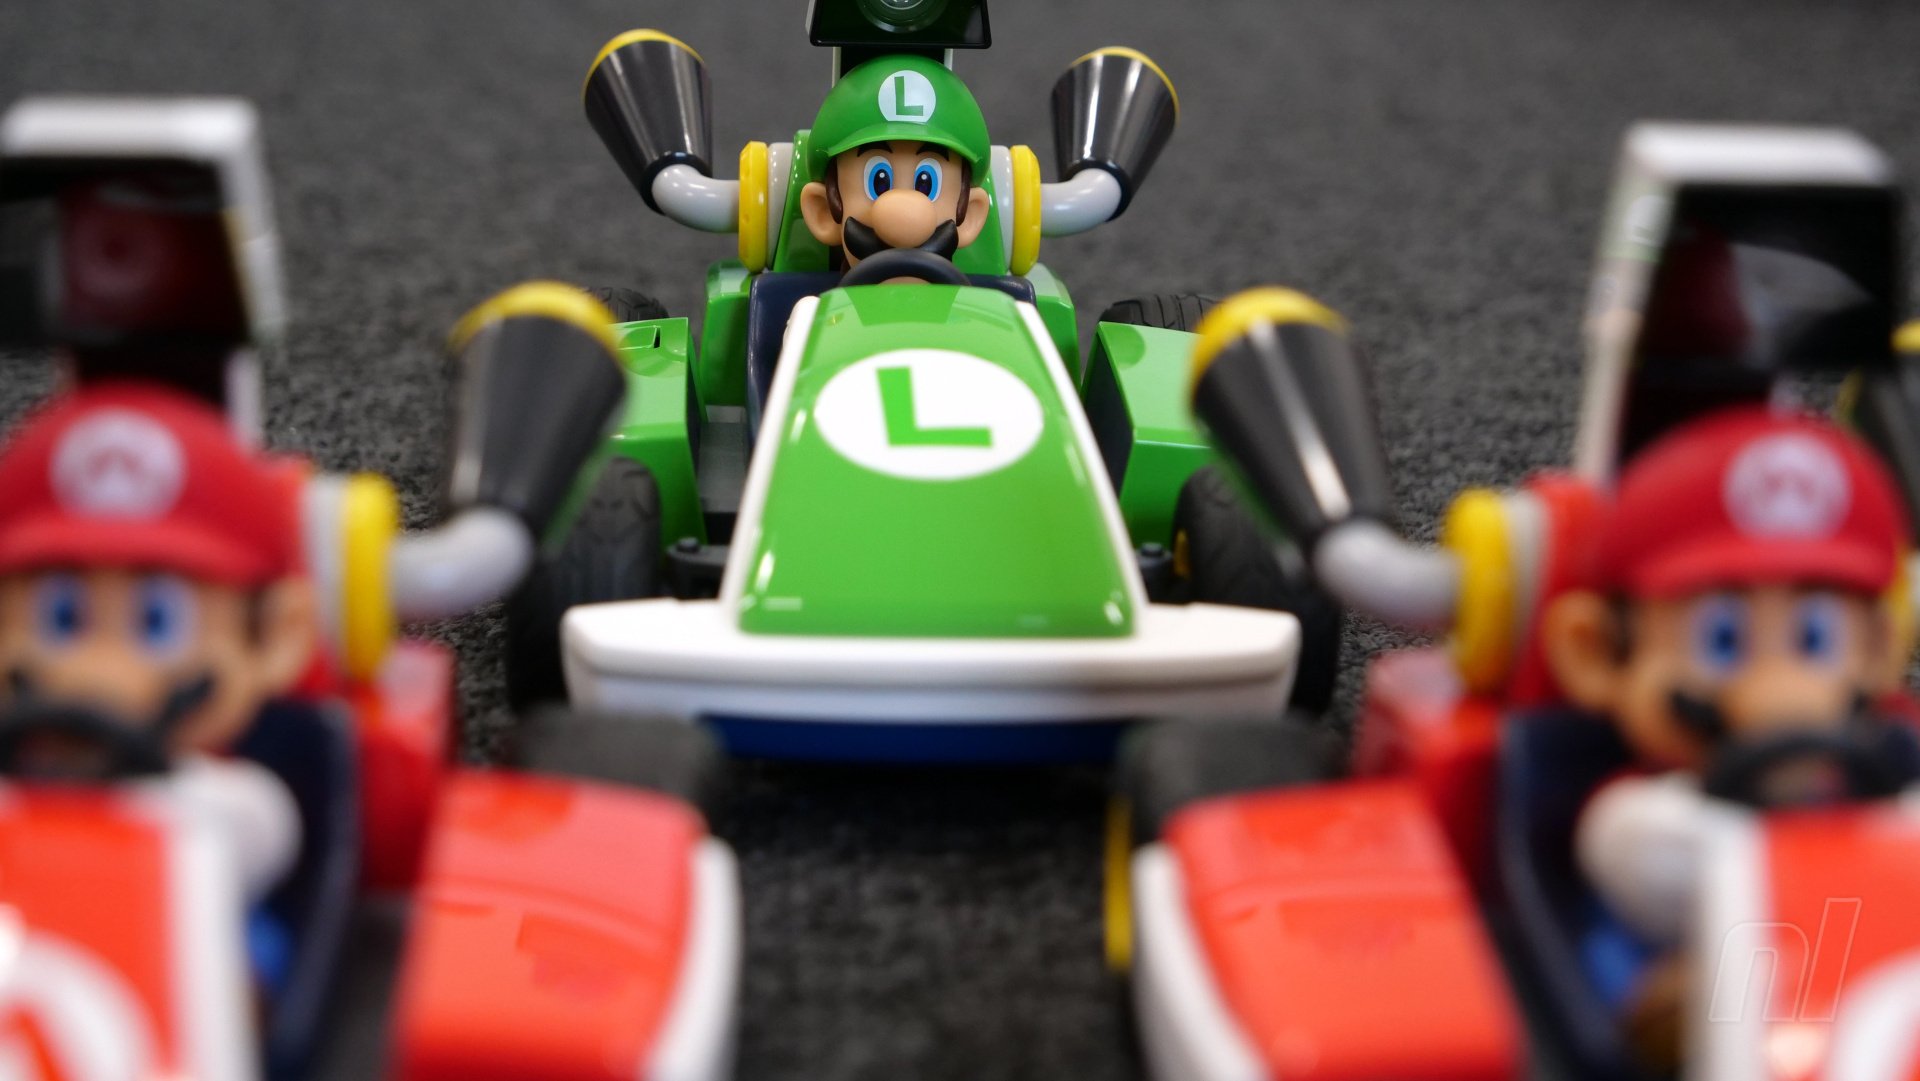 Mario Kart Live Home Circuit, análisis: review con características